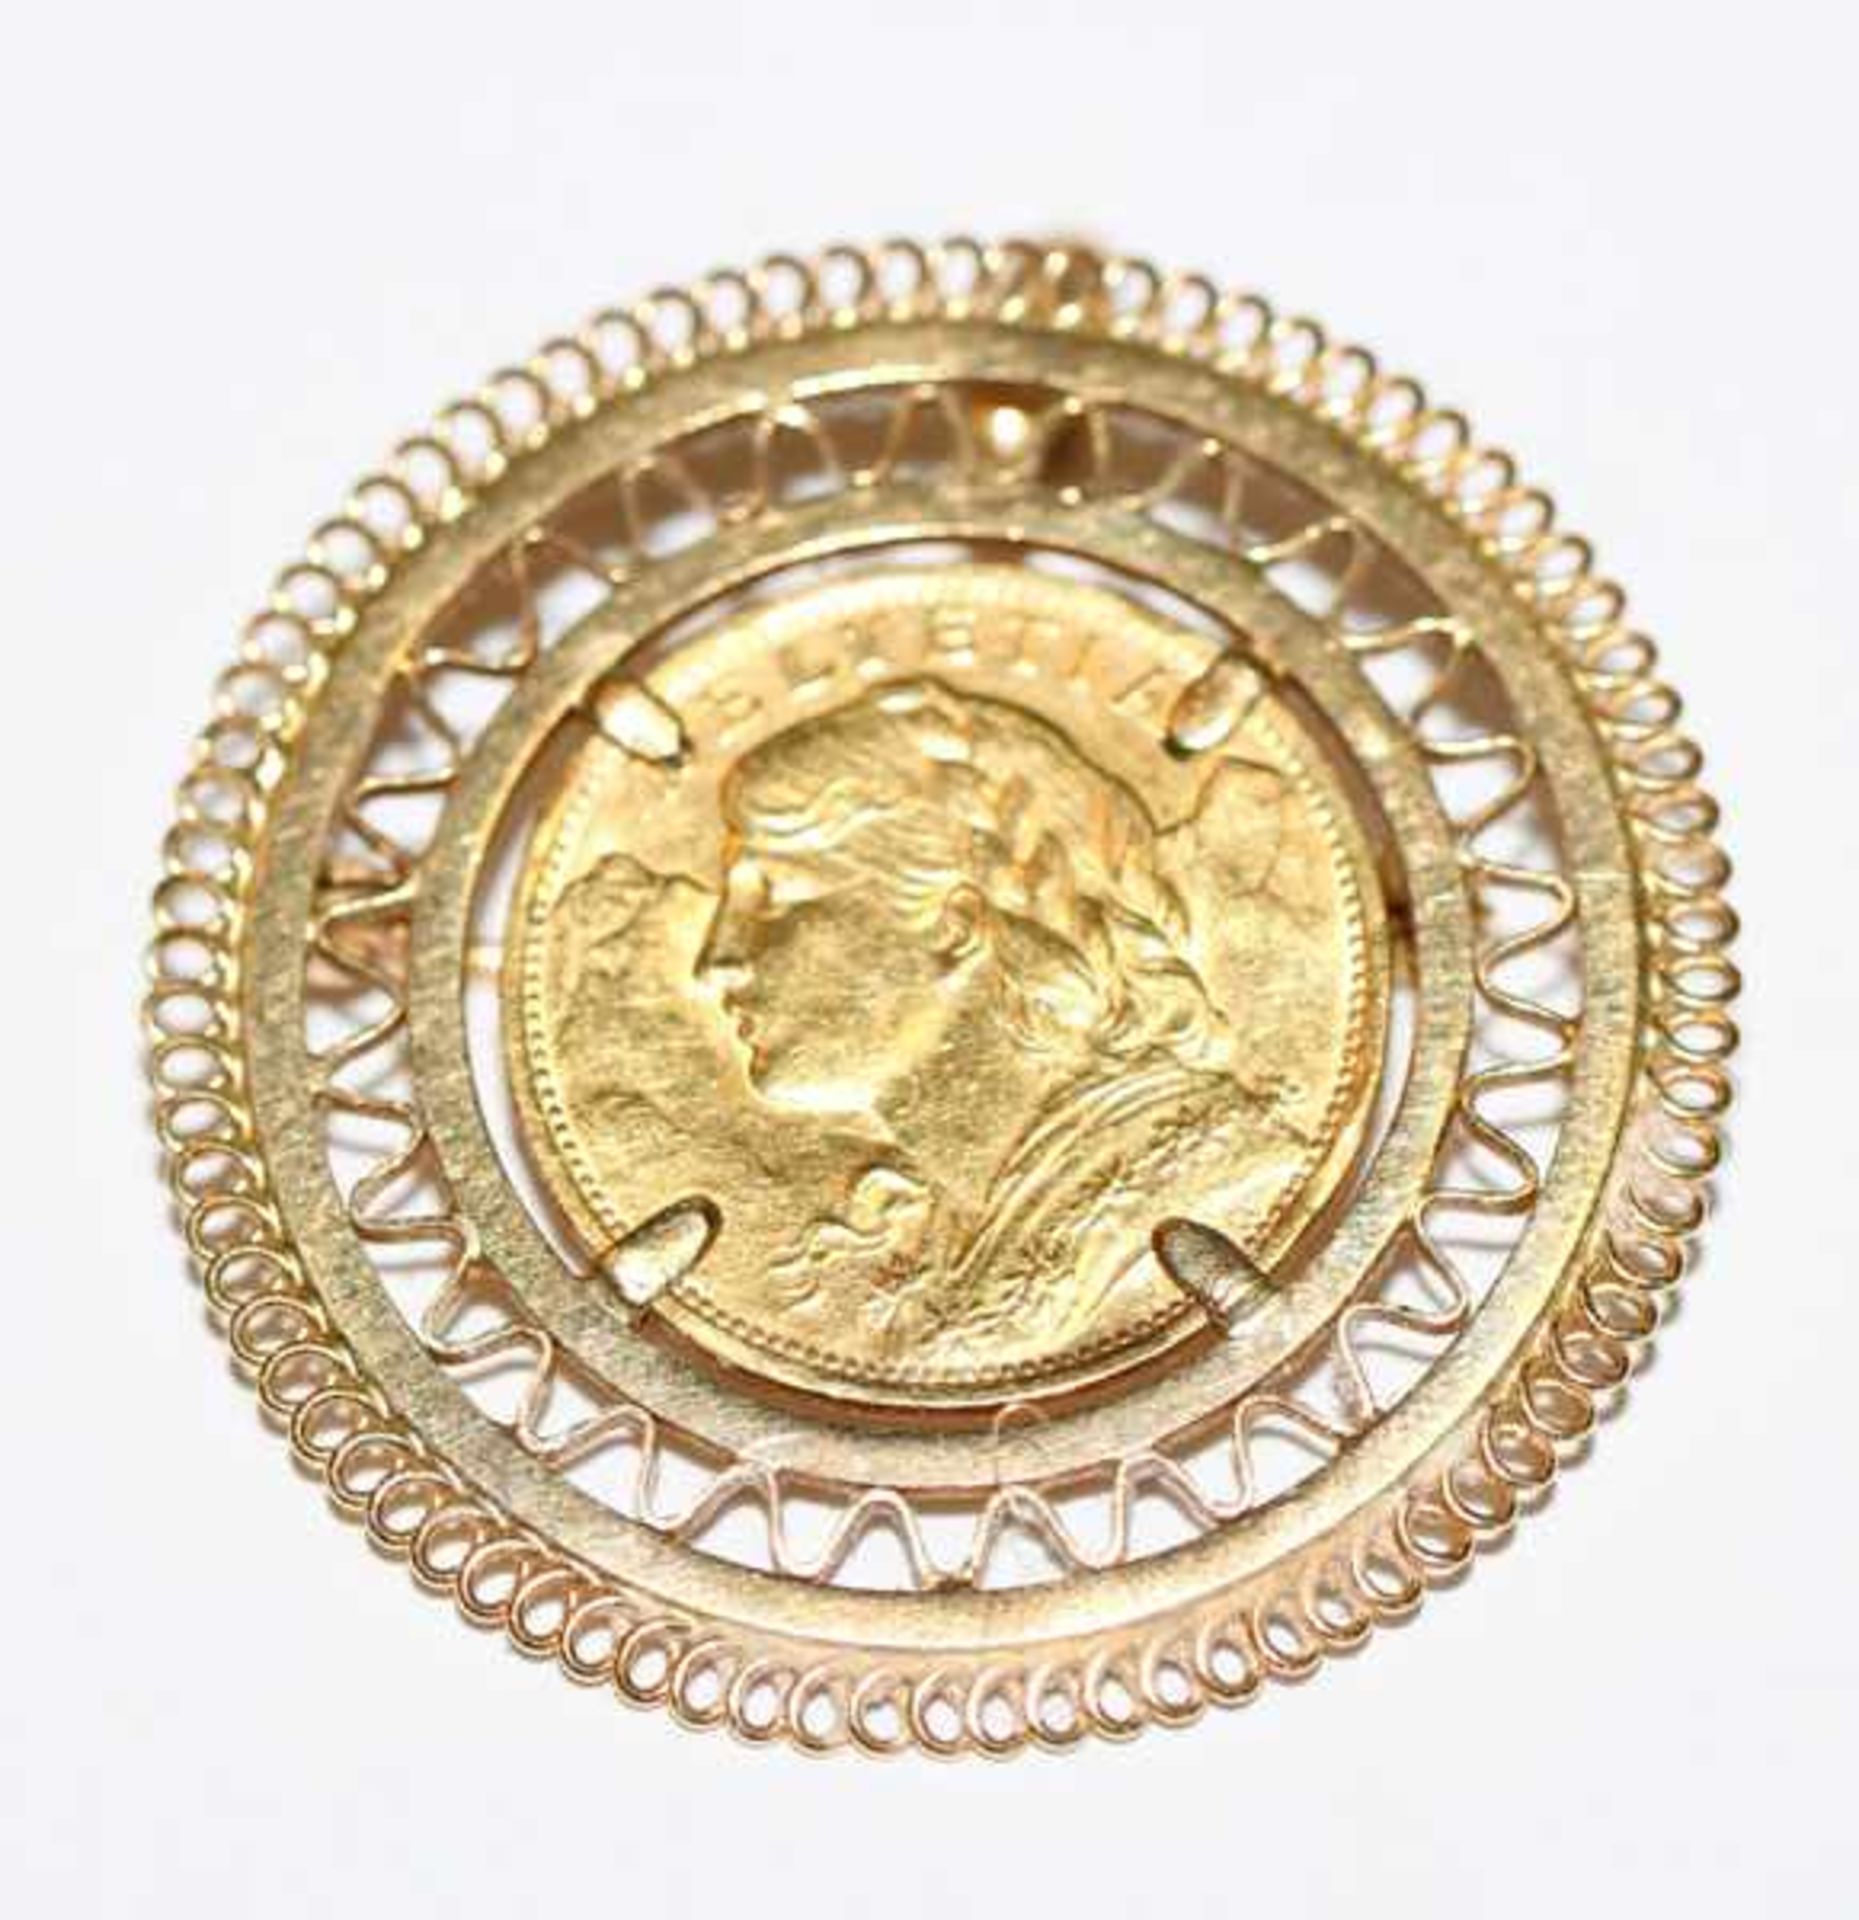 Brosche, 20 Schweizer Franken, 6,45 gr. = 5,8 gr. Feingold, 18 k Gelbgold Fassung, zus. 14 gr., D